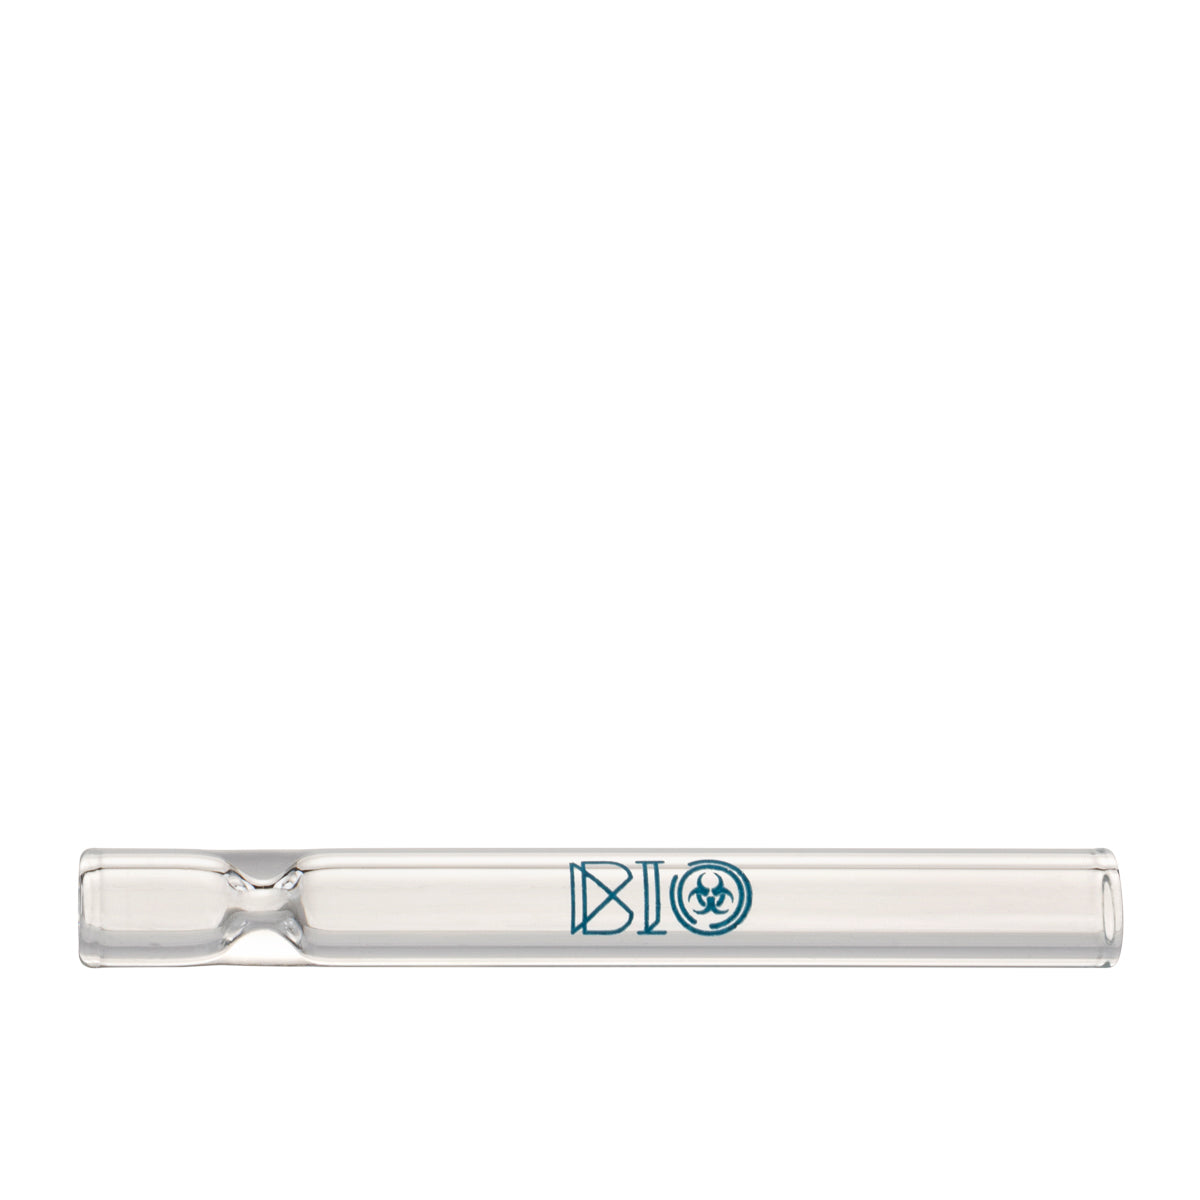 BIO Glass | BIOSTIX Chillums Refill Kit | 4" - Glass - 100pcs + 50pcs FREE Glass Chillum Hand Pipe Bio Glass   